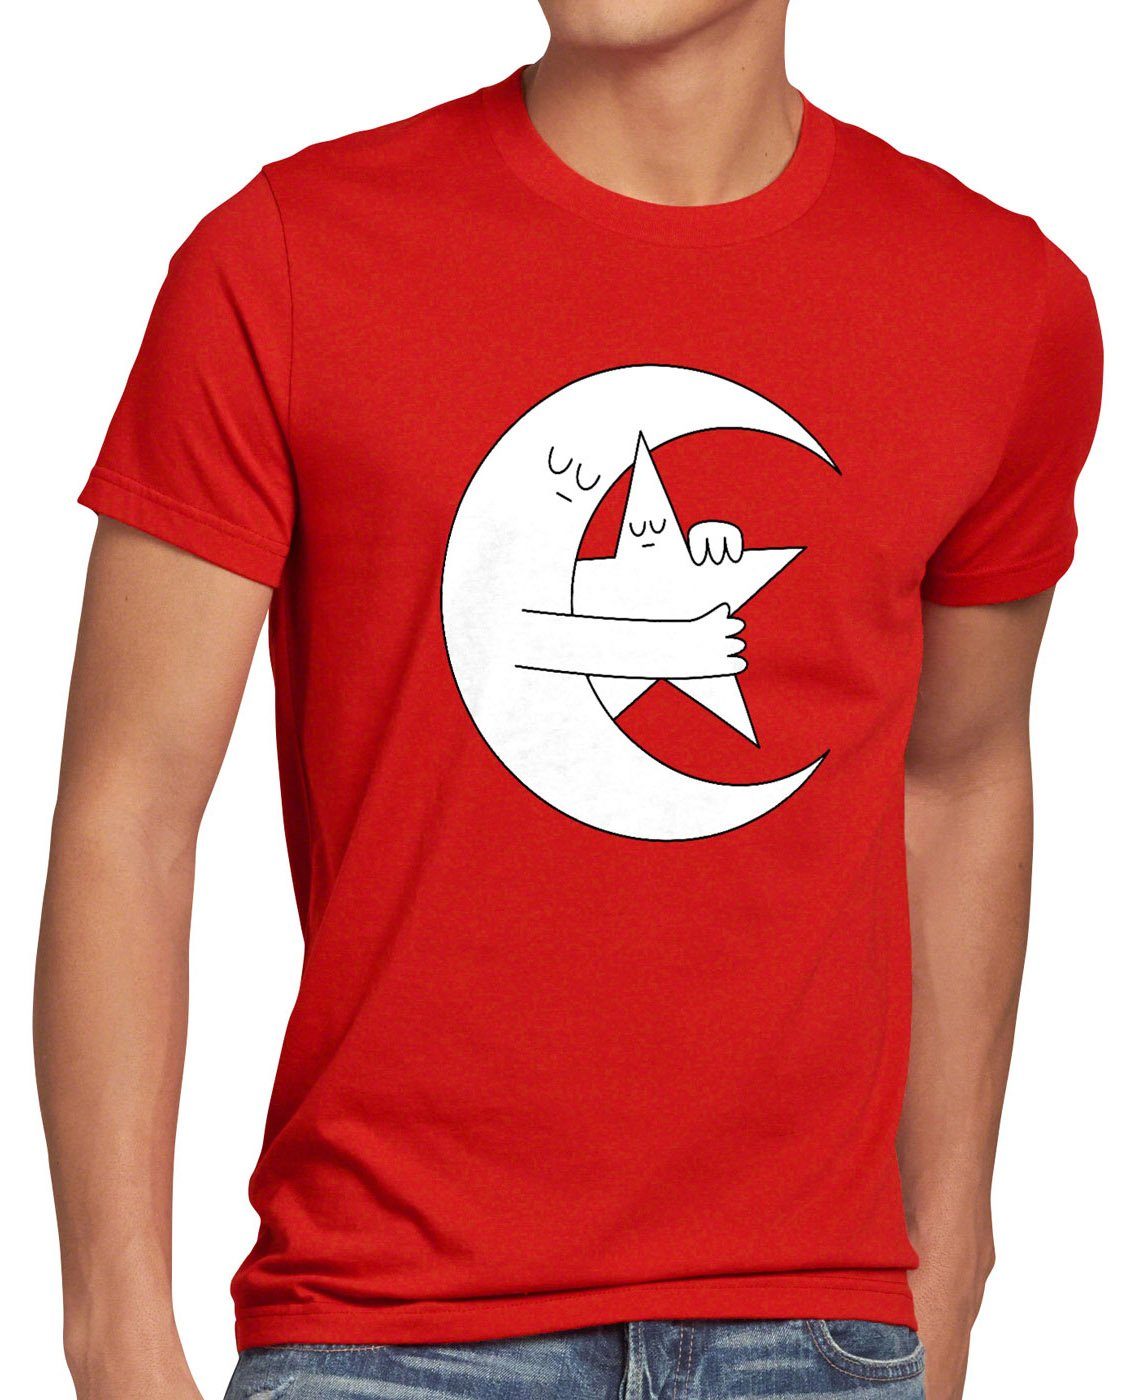 Holen Sie es sich günstig! style3 Print-Shirt Herren Türkei Flagge T-Shirt Demokratie Halbmond Demokrasi Türkiye